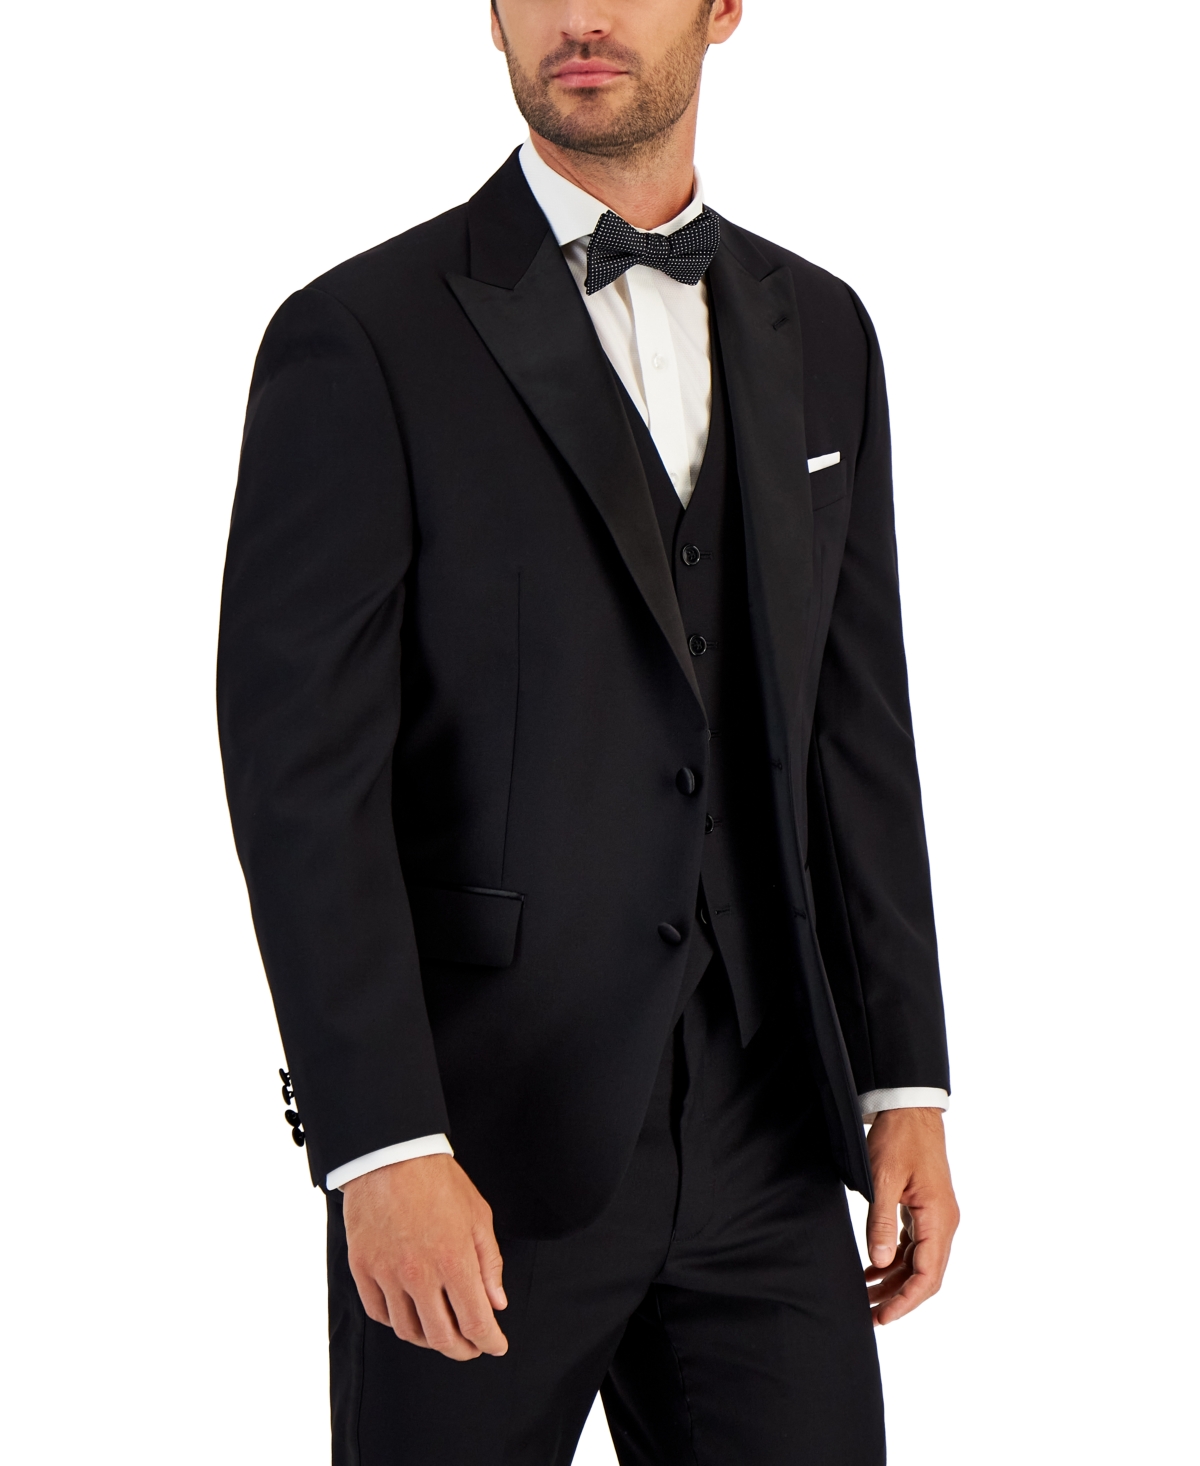 New Gold Black Lapel Tuxedos Coat Jacket Men's Suit Slim Fit 40r 42r 44r 46r 46l 